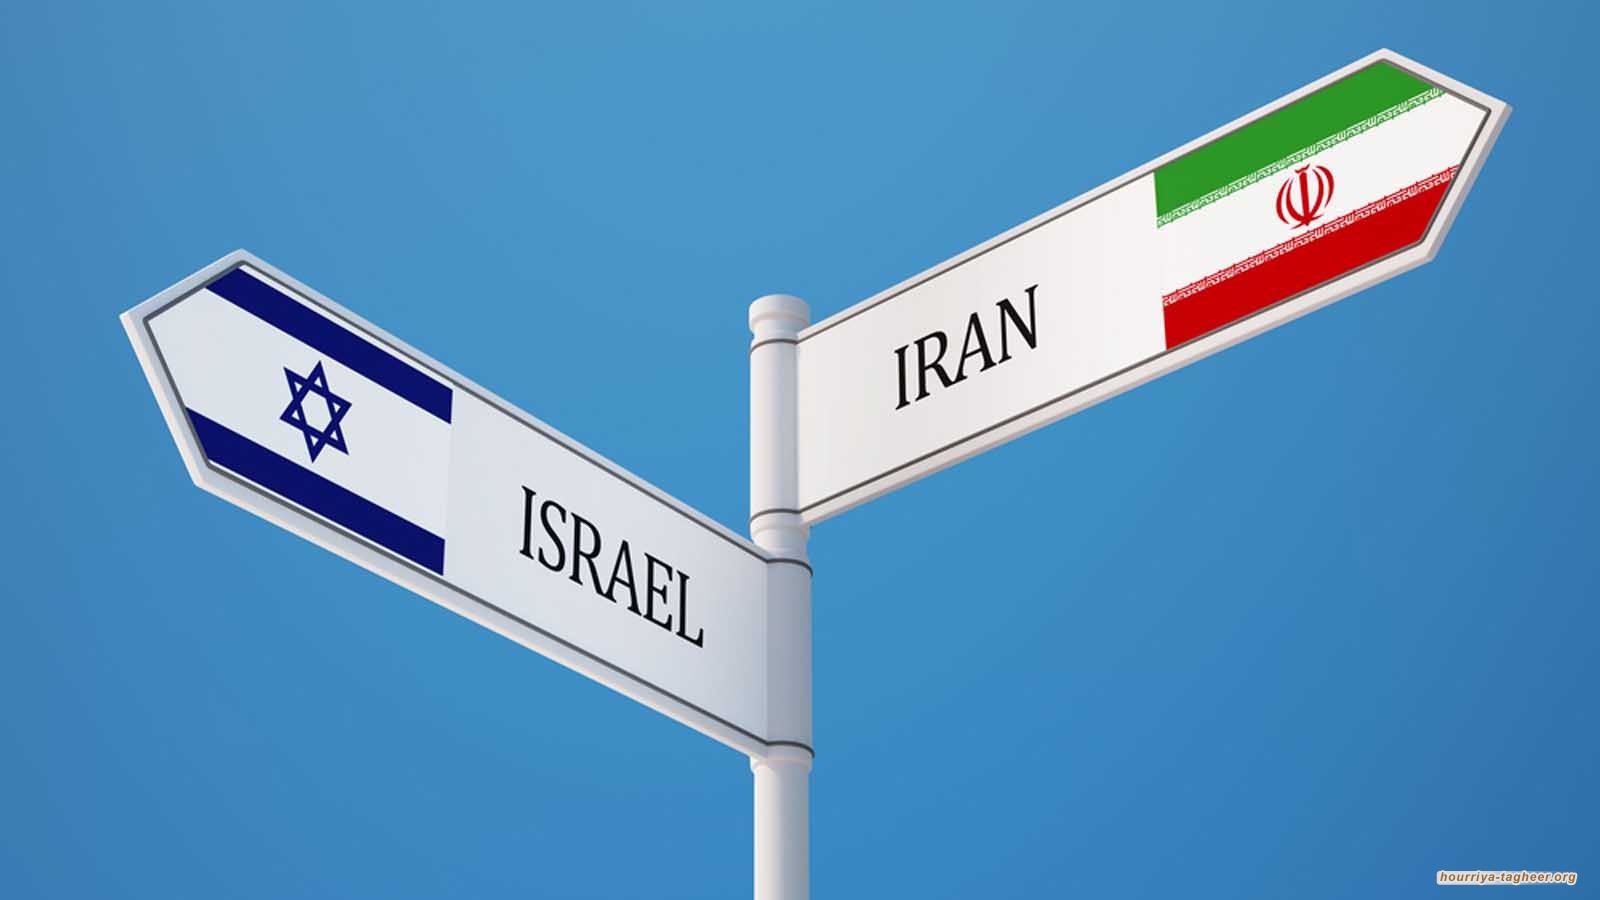 دول الخليج وحياد غير مضمون إزاء الصراع الإيراني الصهيوني